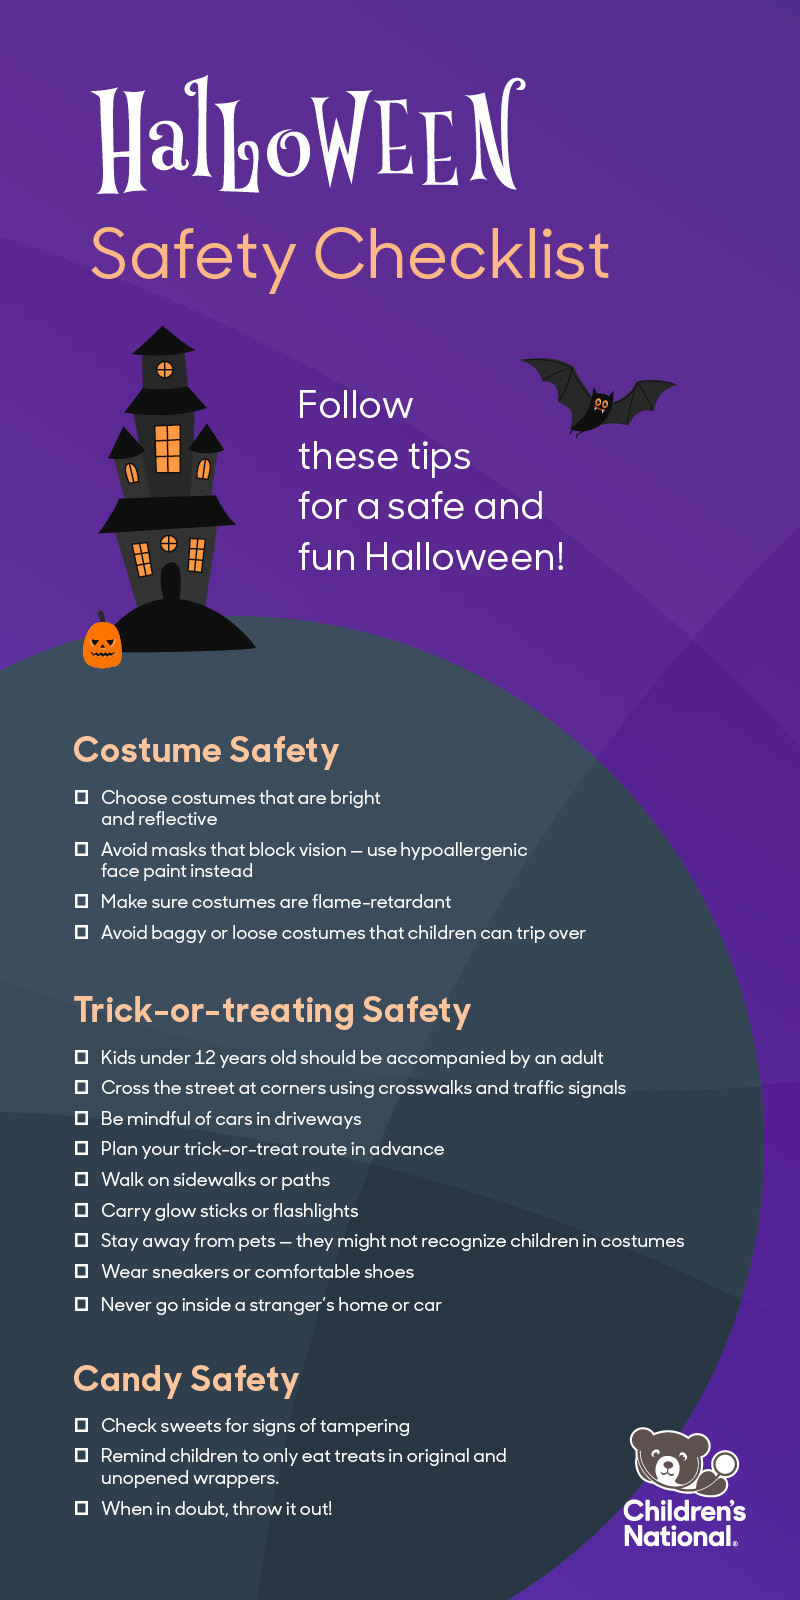 Halloween Safety Checklist infographic